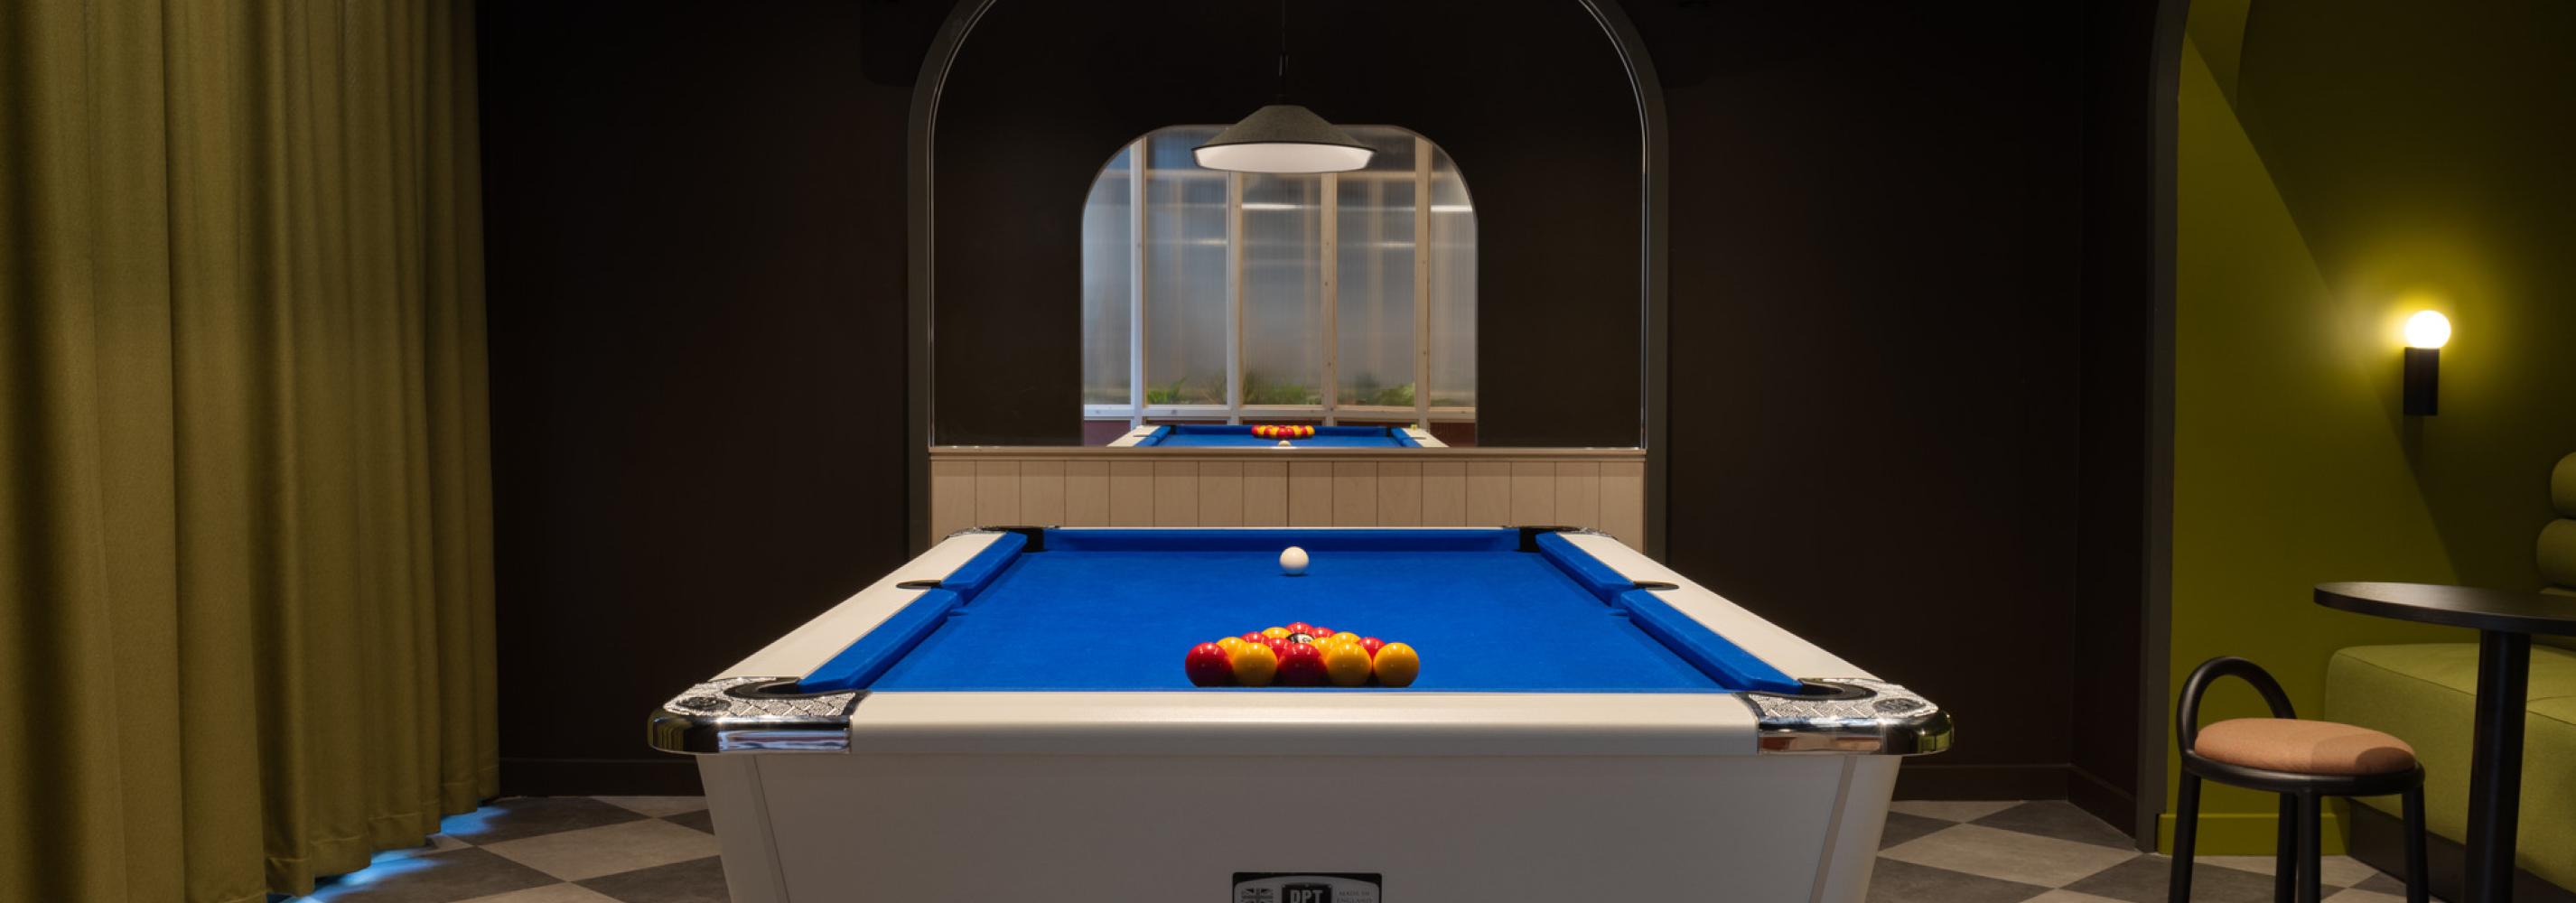 Pool Table - Communal Space 